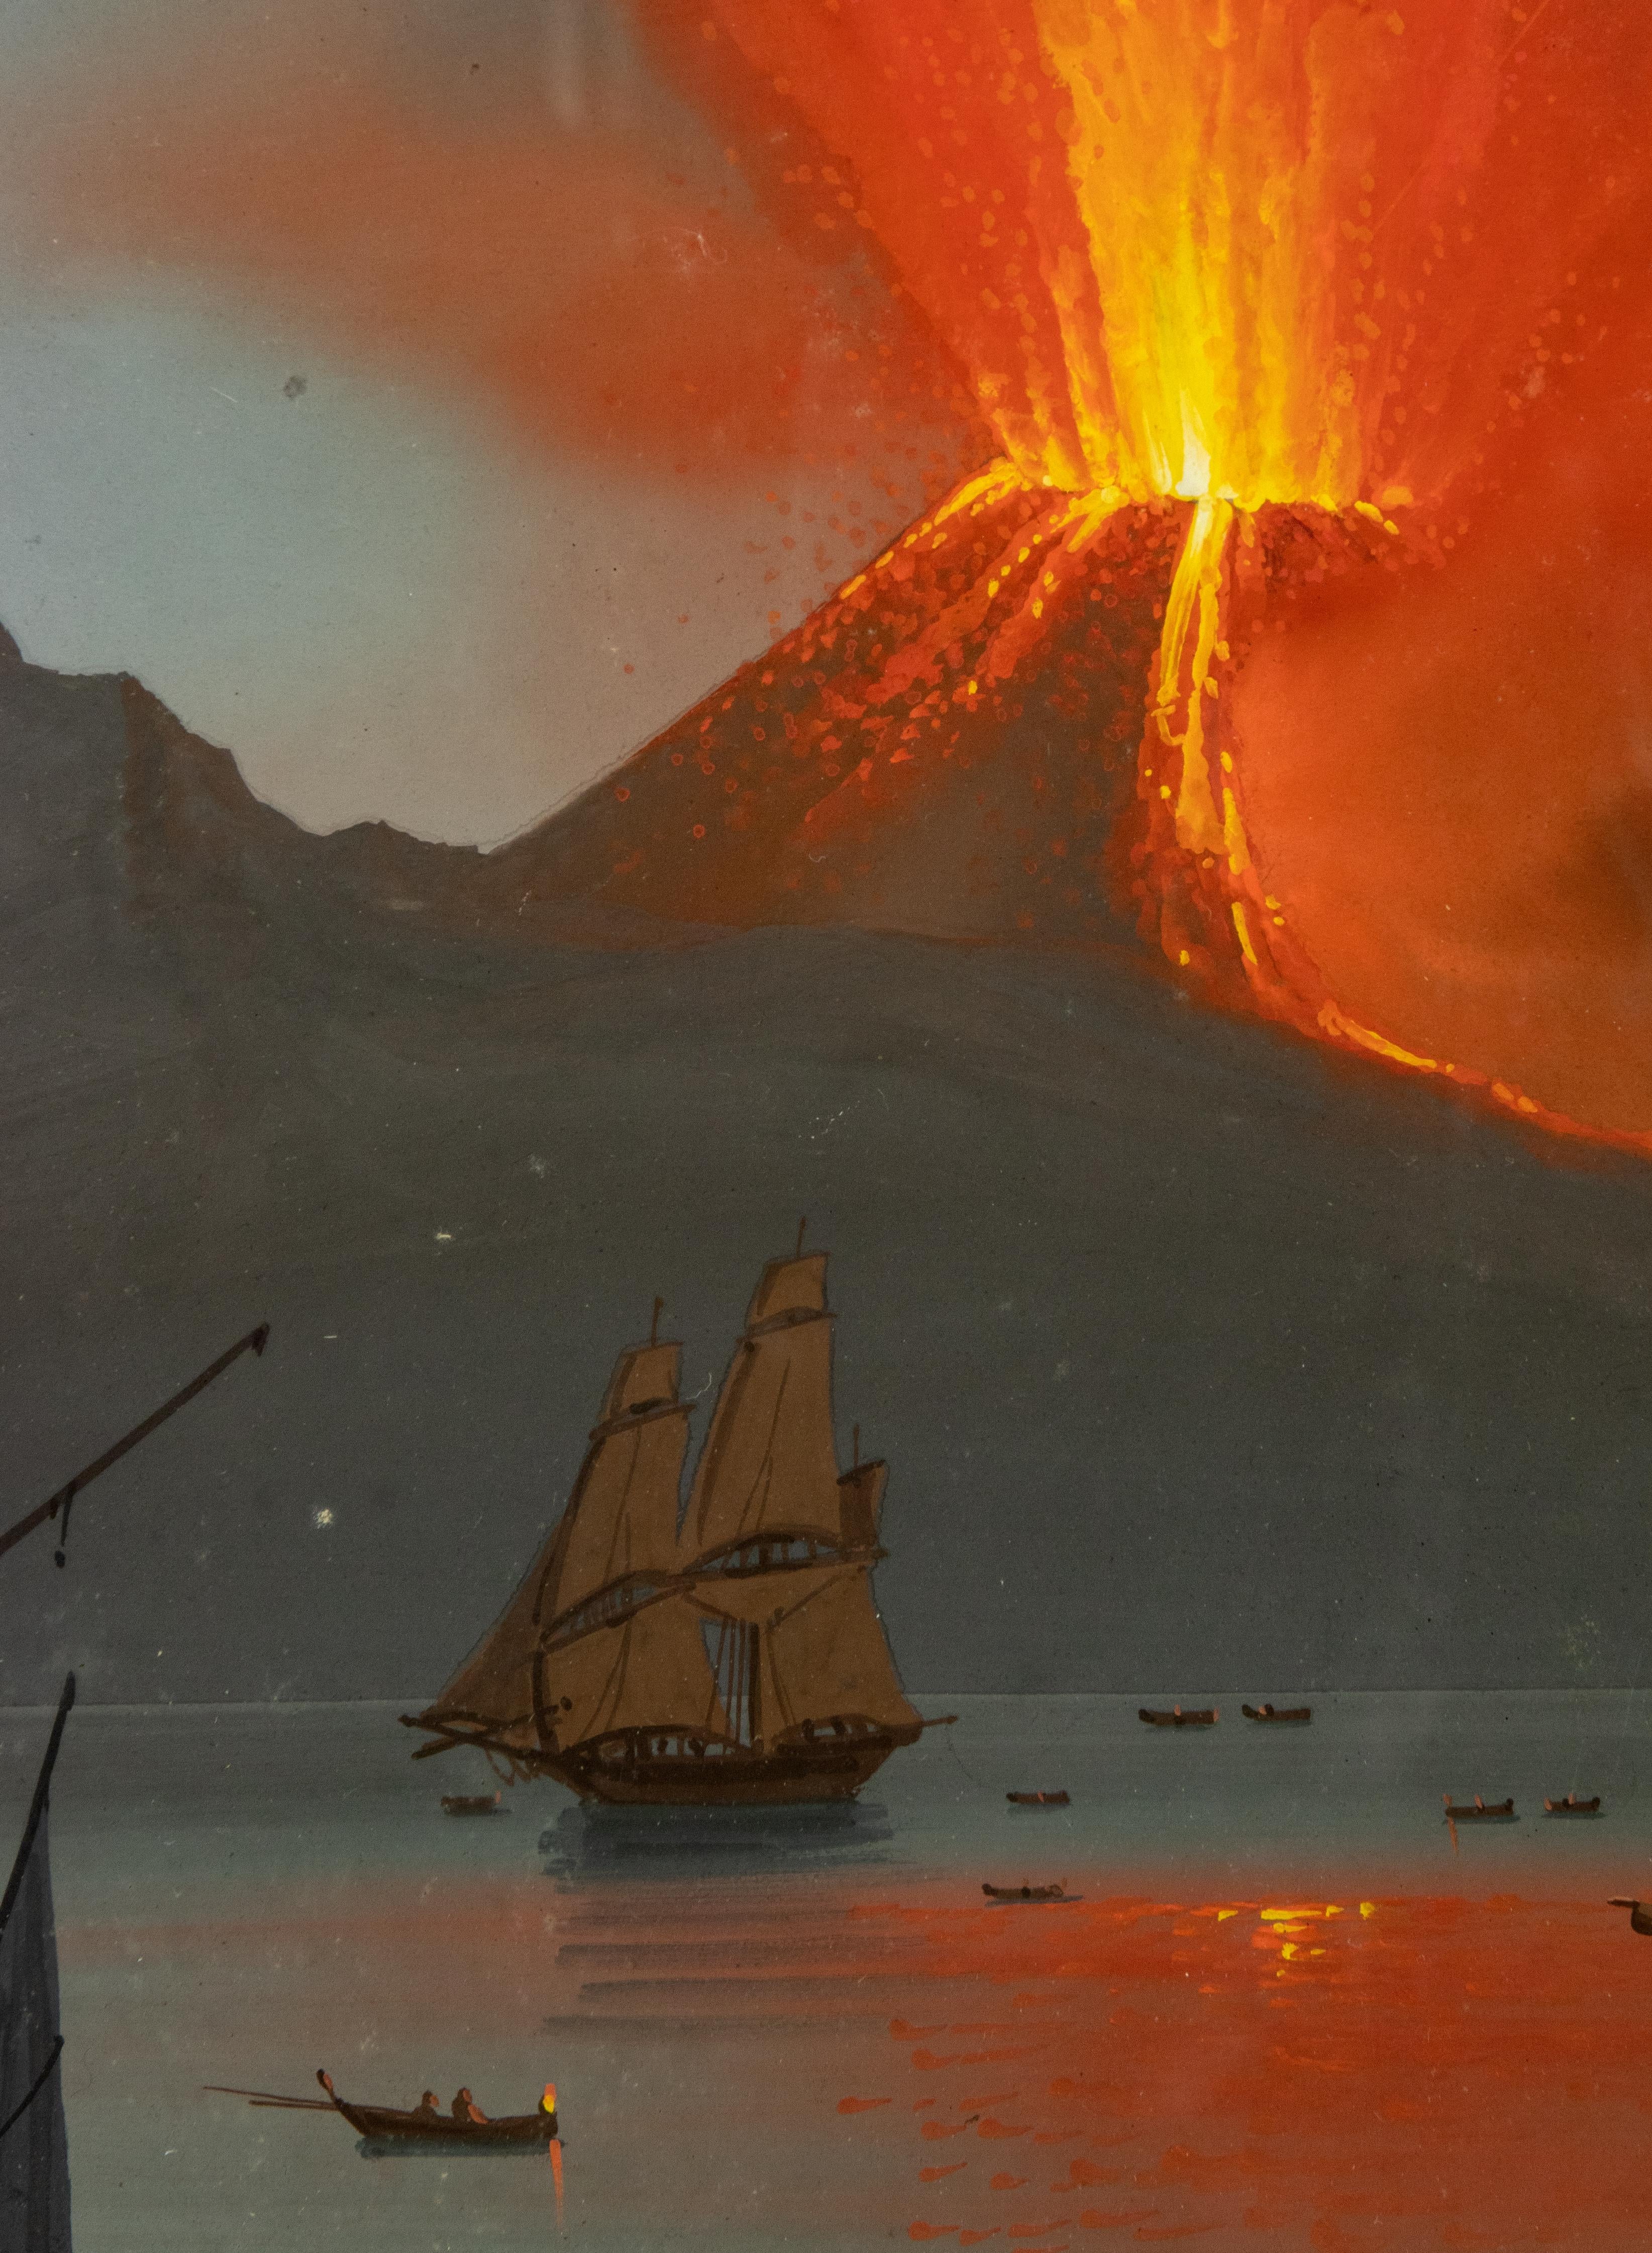 Eruption of Vesuvium - Gouache by C. De Vito - 1839 - Painting by Camillo de Vito